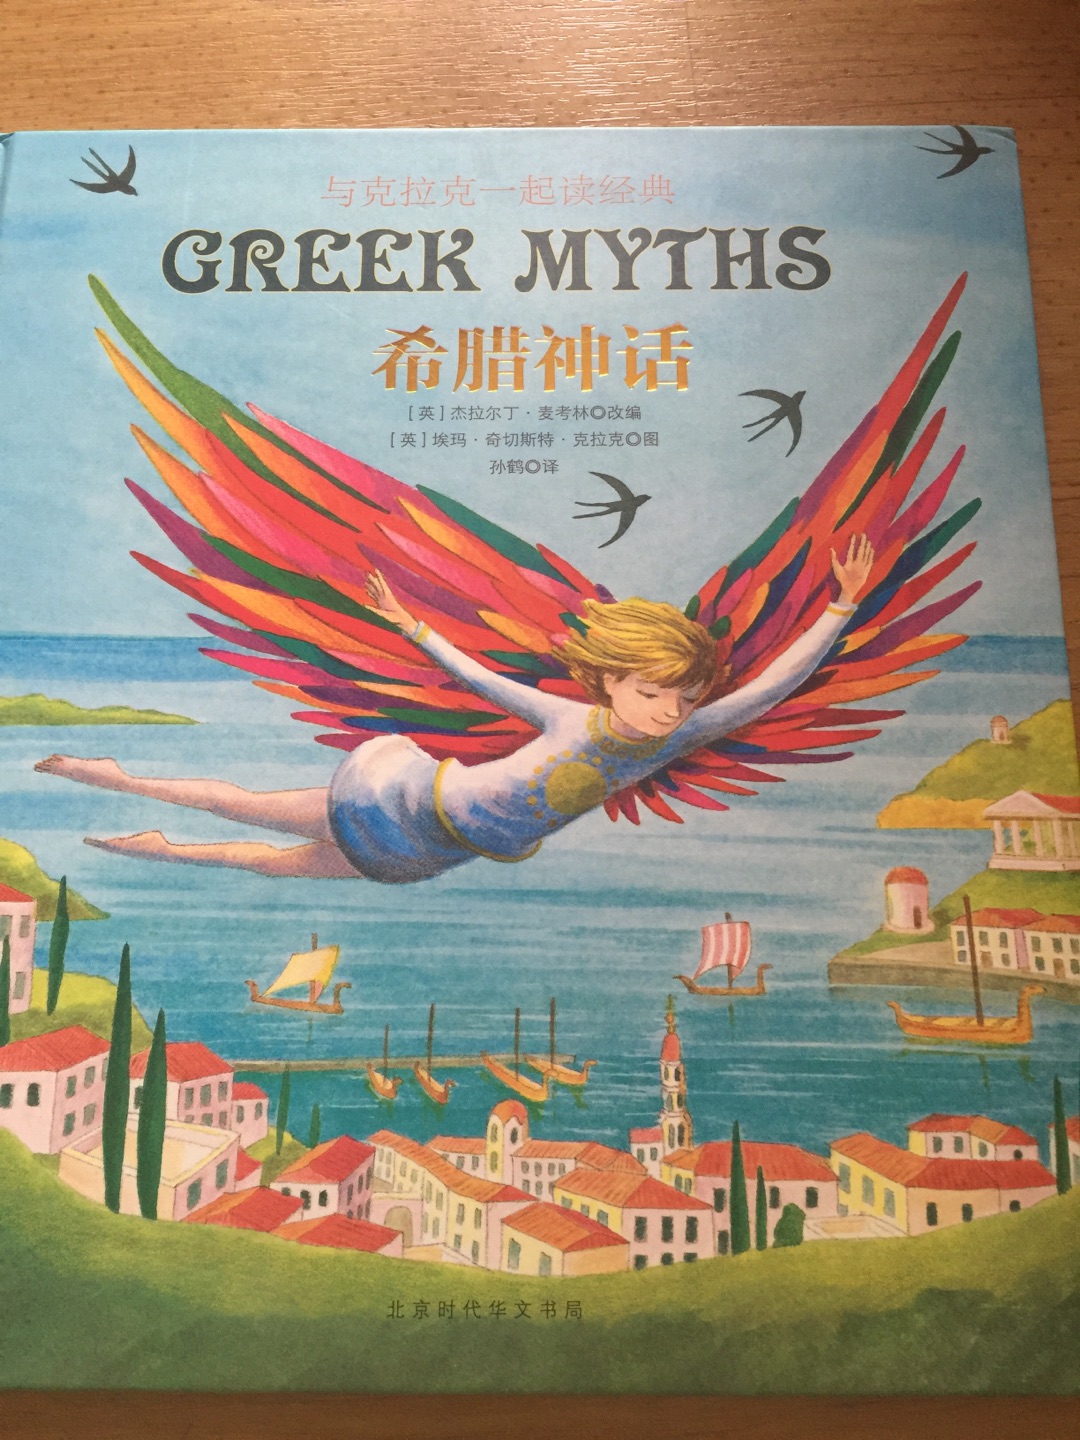 书太精美了！纸质优良，颜色鲜艳。文字多，适合小学生自主阅读。图画配的也好。希腊神话中的人名很复杂，这本书选取了经典的故事，非常值得购买。我们把它当成精品书库放起来了。